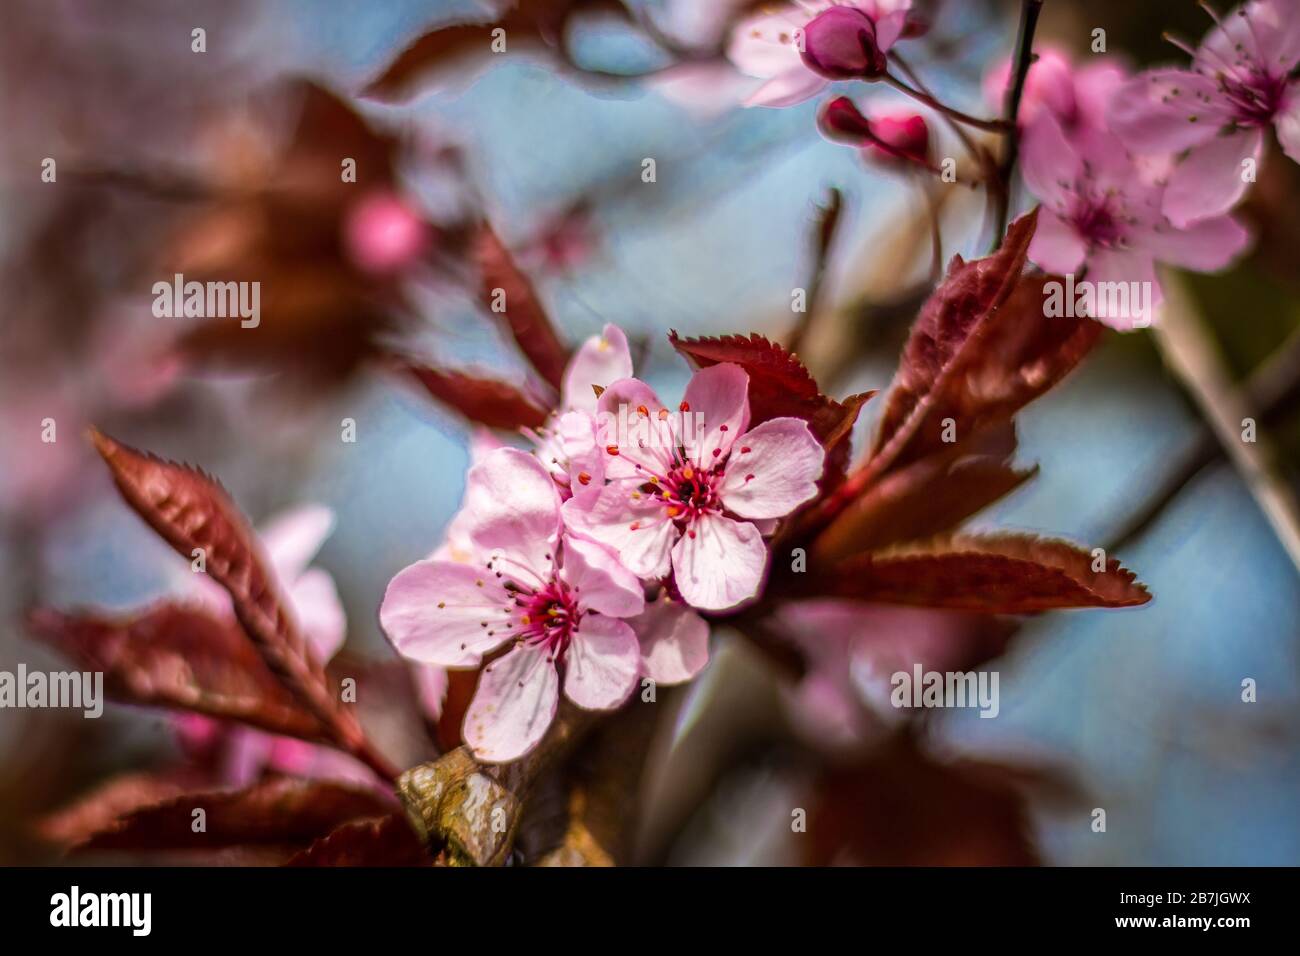 Wunderschönes Makrobild der Blume des prunus Cerasifera, das in den Monaten März und April mit wunderschönen violetten Pinktönen blüht Stockfoto